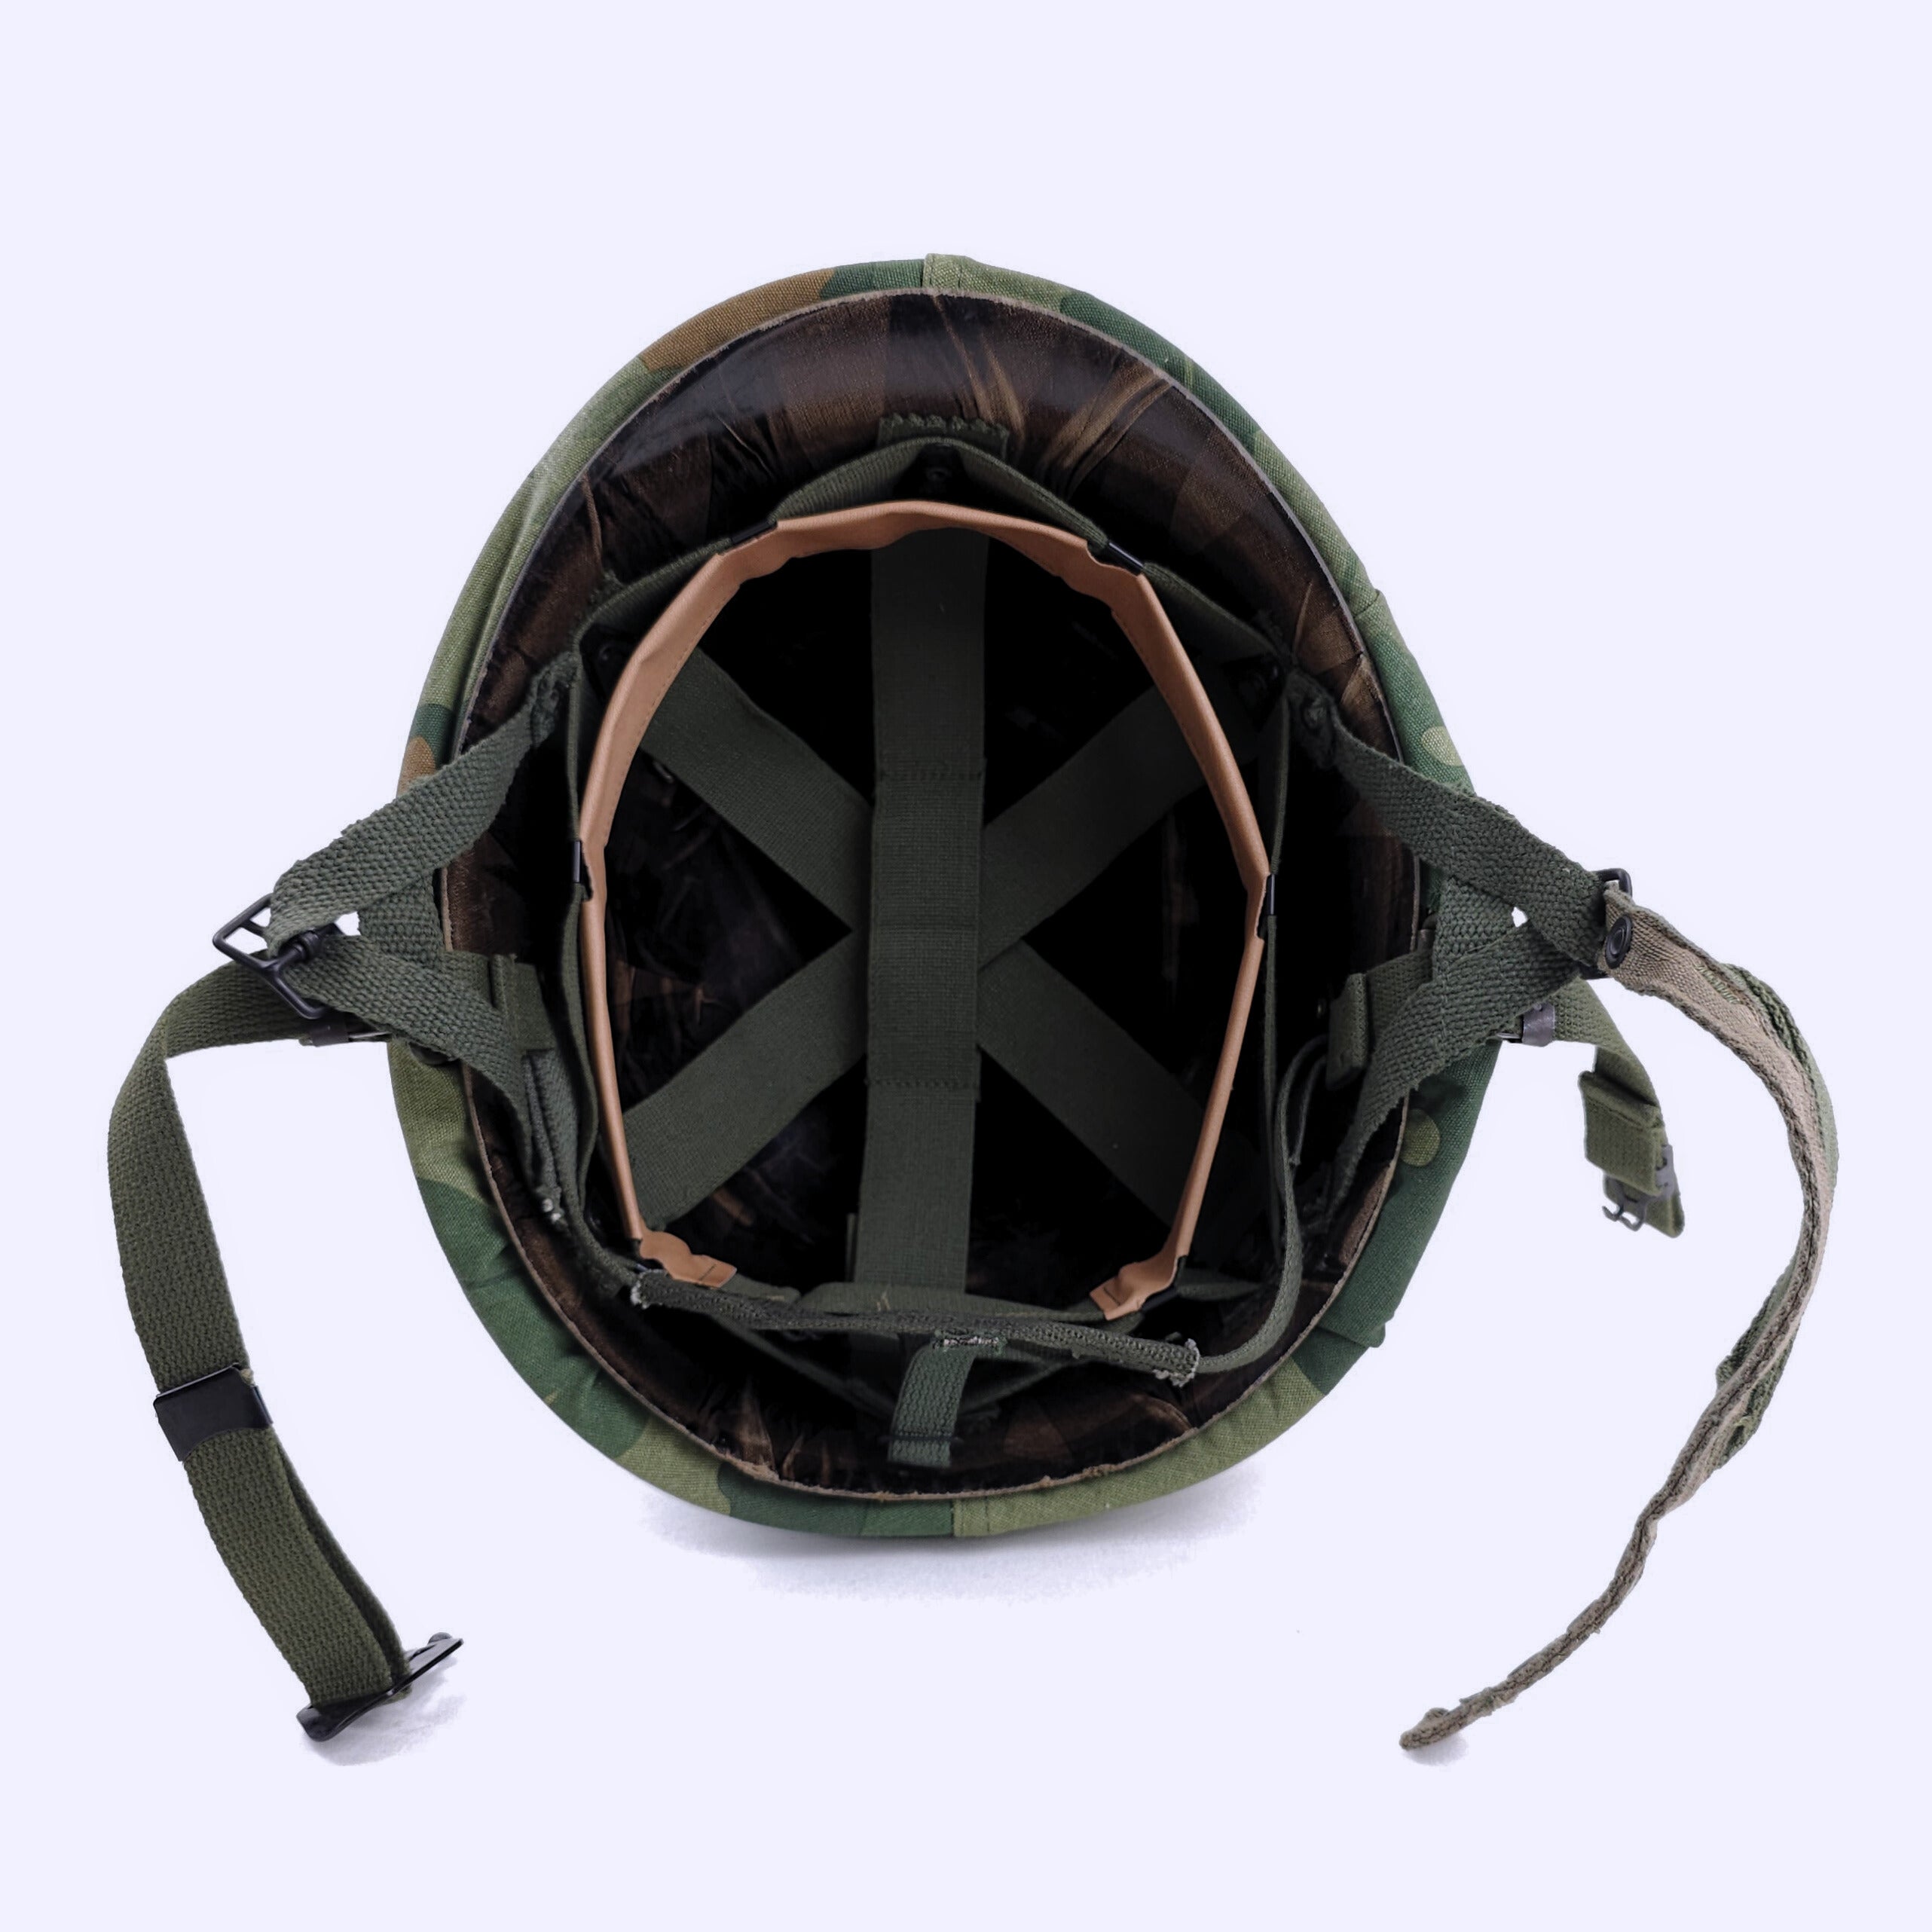 Paratrooper Helmet - Mid Vietnam War - Complete